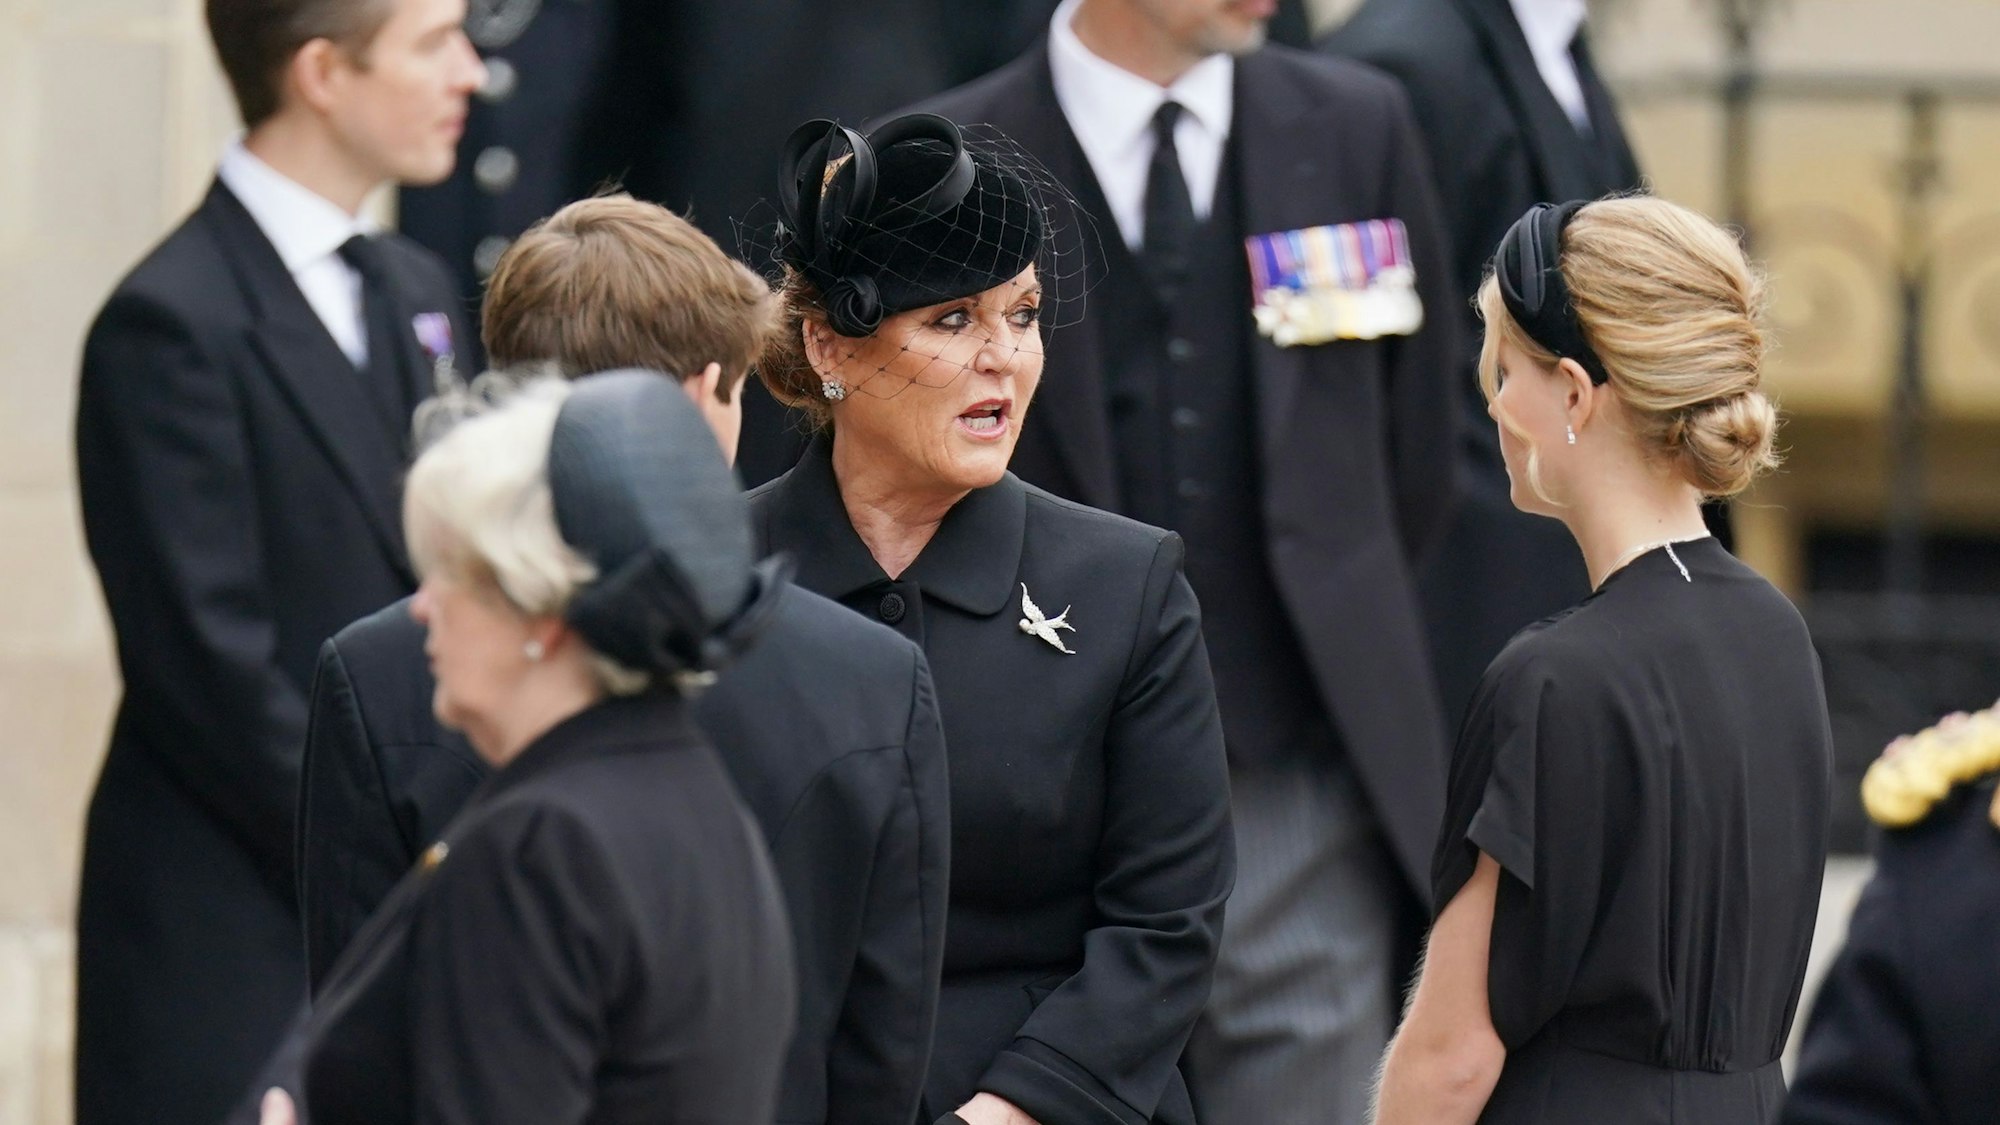 Sarah Ferguson (M) kommt zum Staatsakt vor der Beisetzung von Königin Elizabeth II. in der Westminster Abbey. Zum Staatsbegräbnis für Elizabeth II. werden Hunderttausende Menschen auf den Straßen Londons erwartet. Für die Trauerfeier sind Präsidenten, Regierungschefs sowie gekrönte Häupter aus aller Welt angereist. +++ dpa-Bildfunk +++